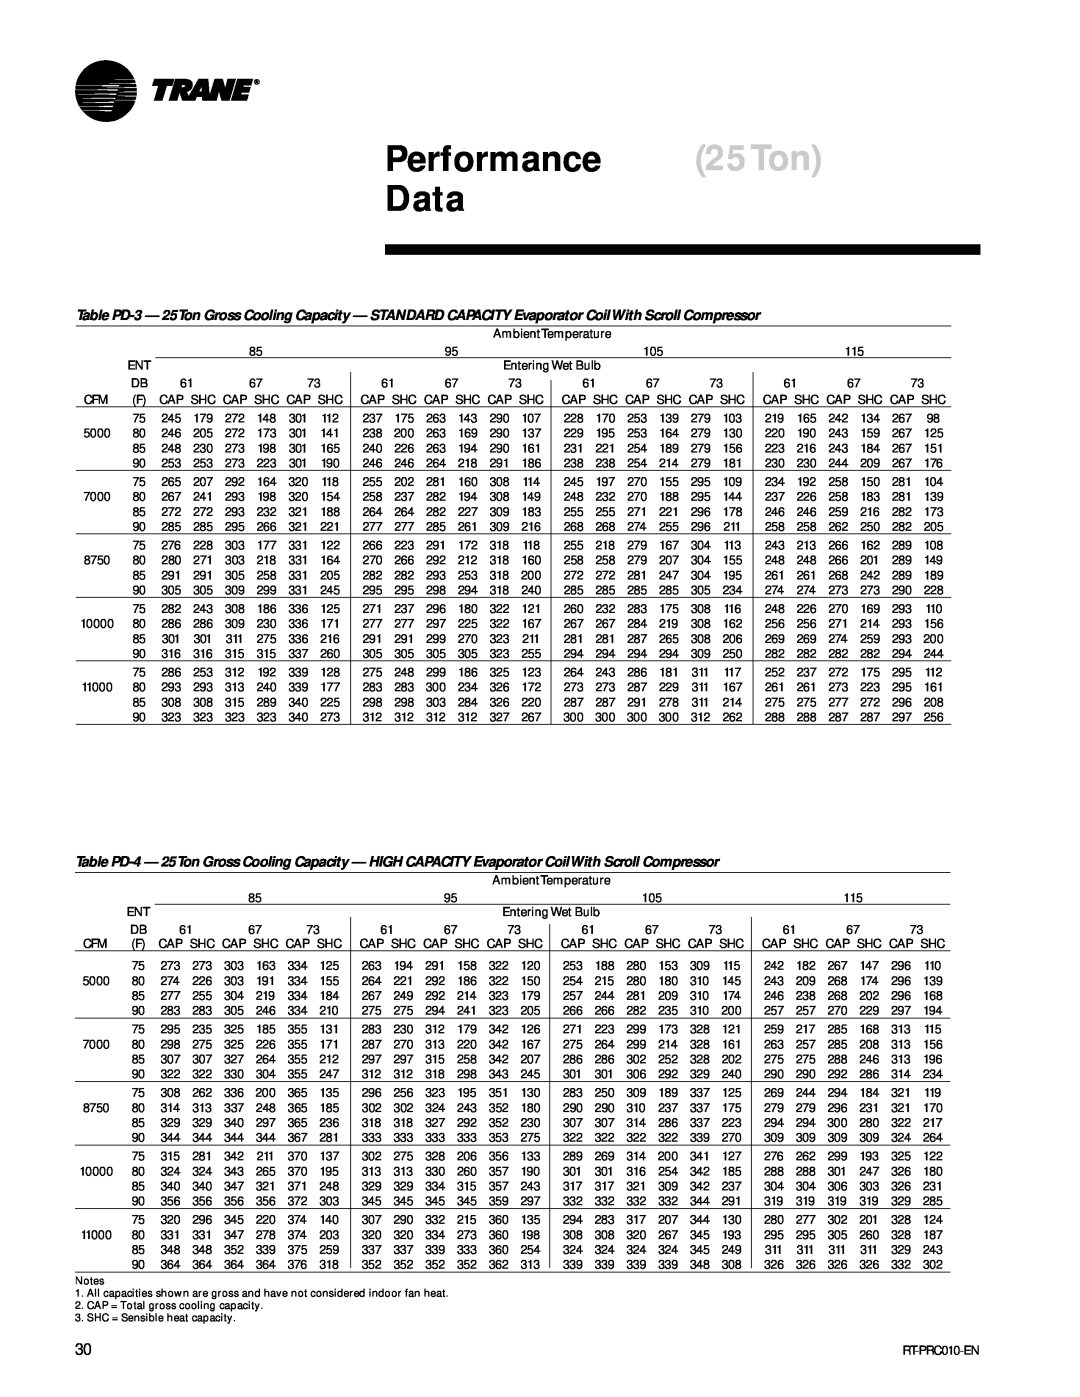 Trane RT-PRC010-EN manual Performance 25Ton Data 